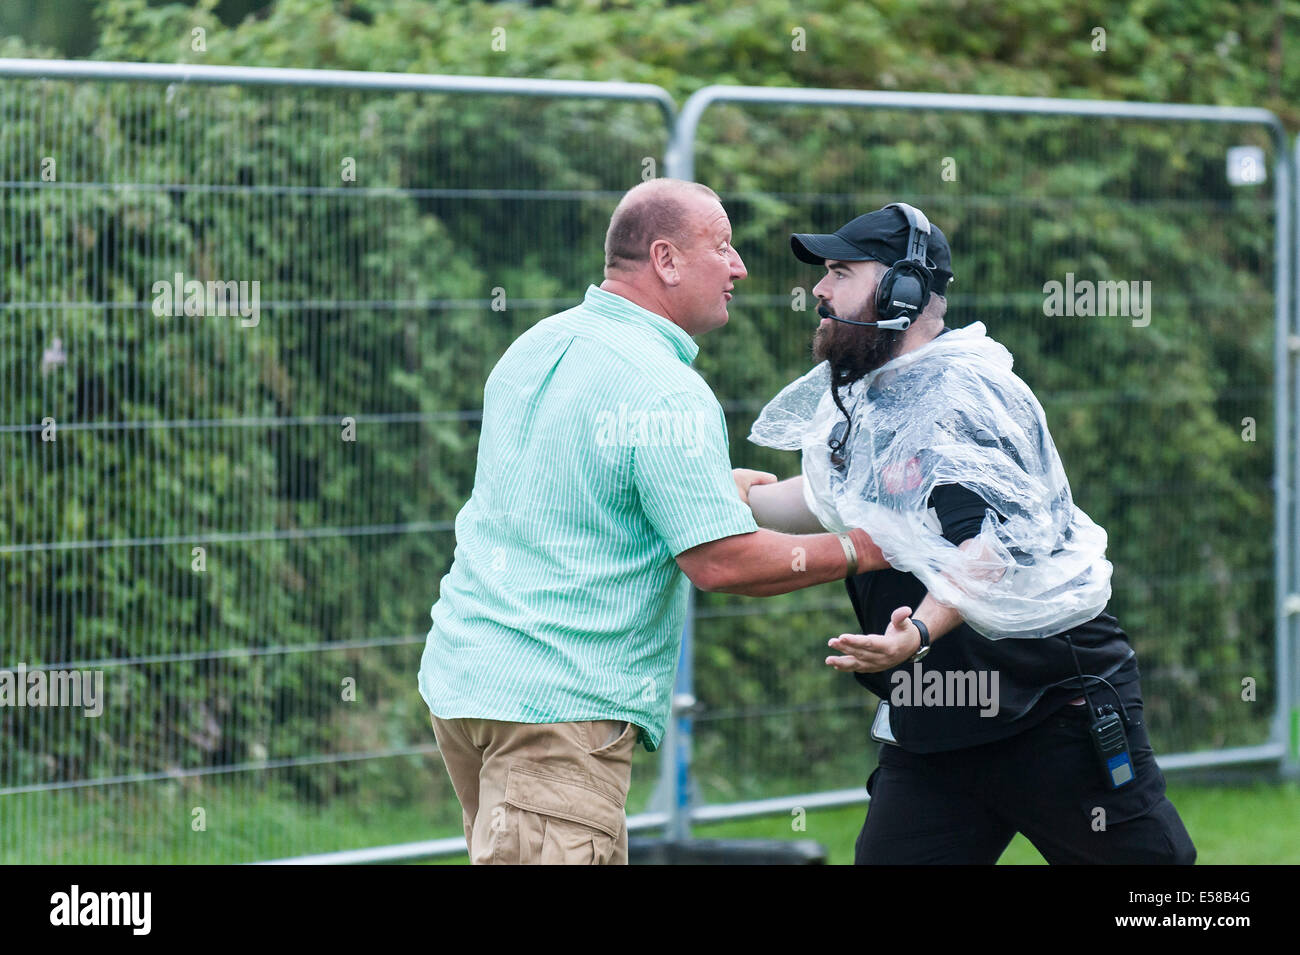 Eine Konfrontation zwischen einem Sicherheitsbeamten, der ein Mitglied der Öffentlichkeit stoppt. Stockfoto